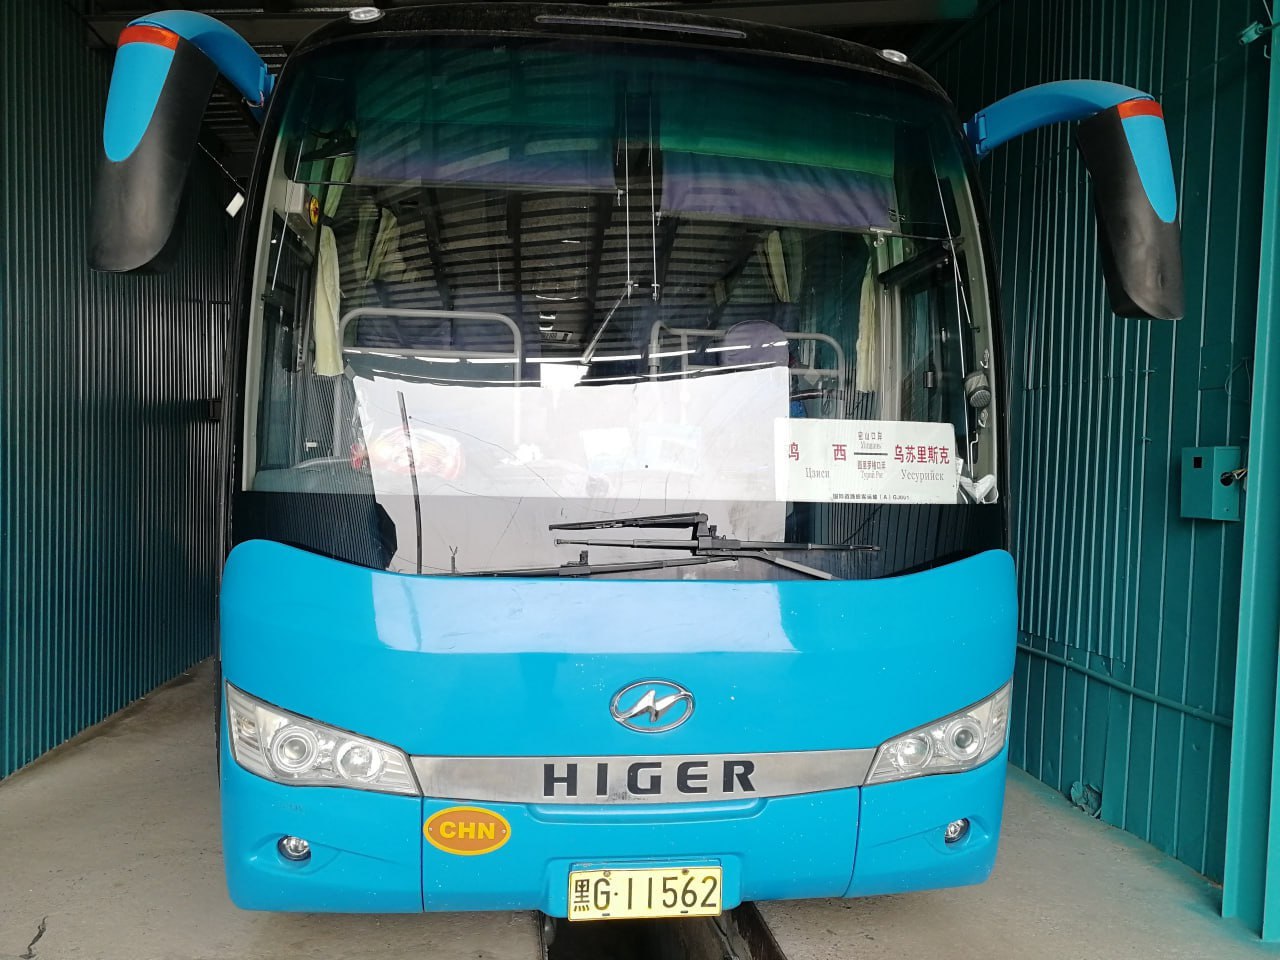 Автобус из Китай на российском КПП